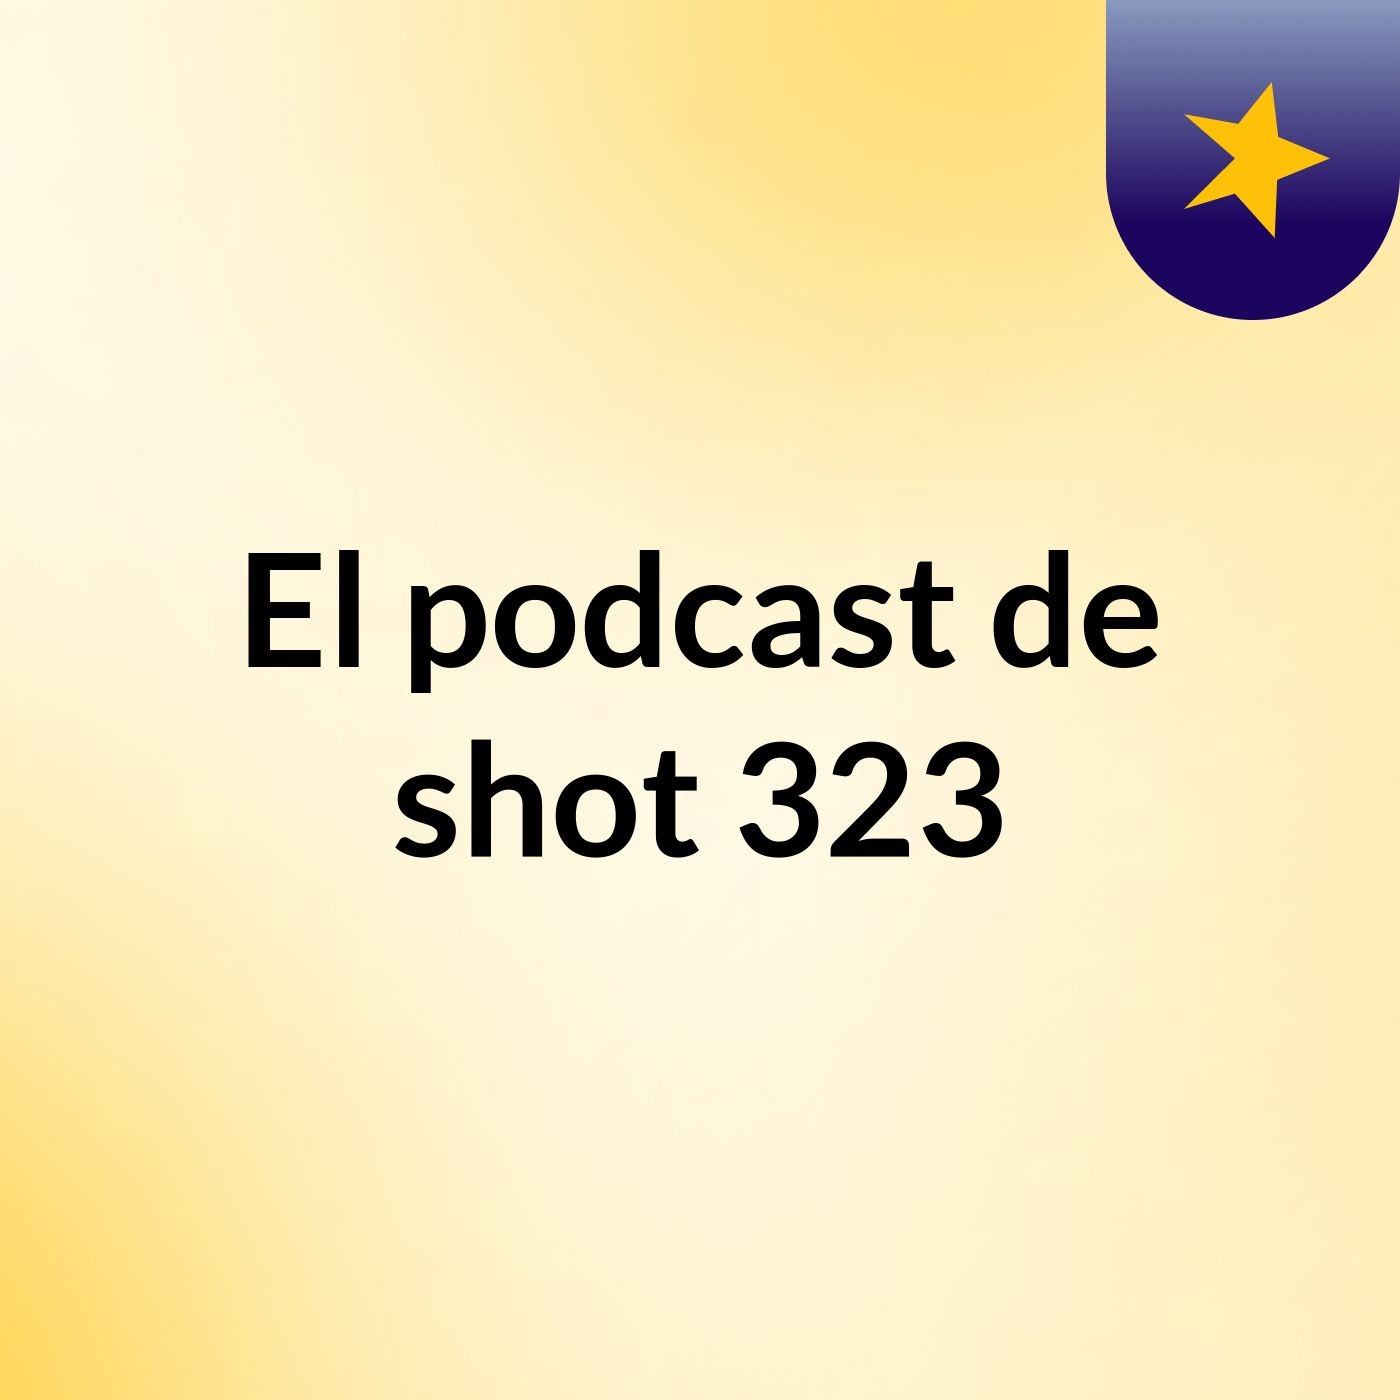 El podcast de shot 323